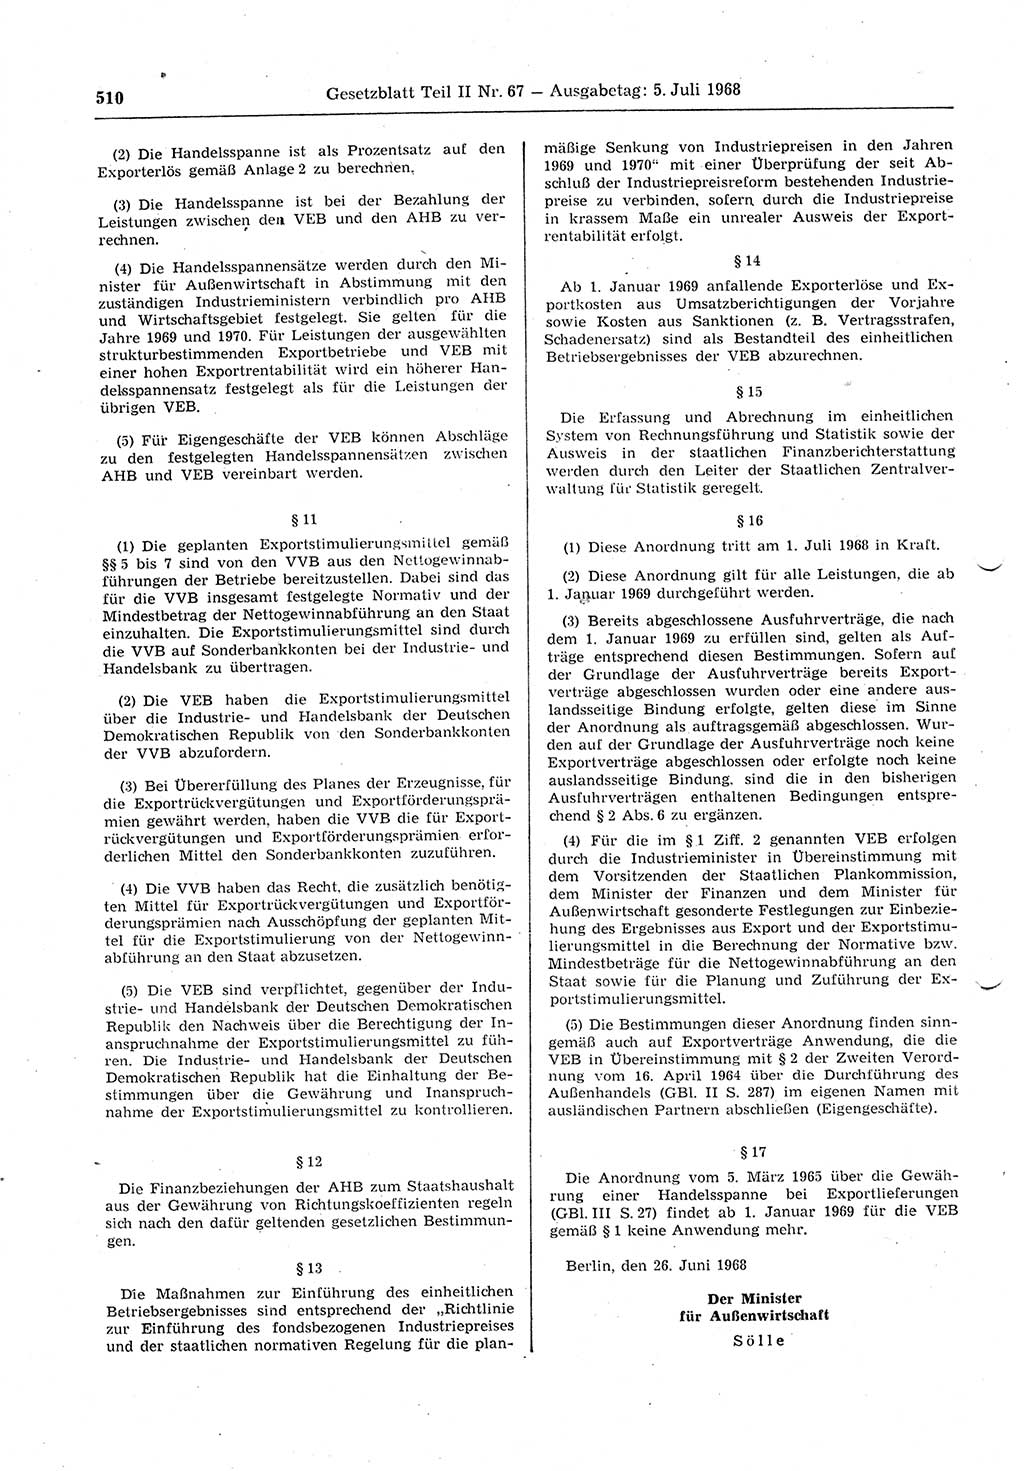 Gesetzblatt (GBl.) der Deutschen Demokratischen Republik (DDR) Teil ⅠⅠ 1968, Seite 510 (GBl. DDR ⅠⅠ 1968, S. 510)